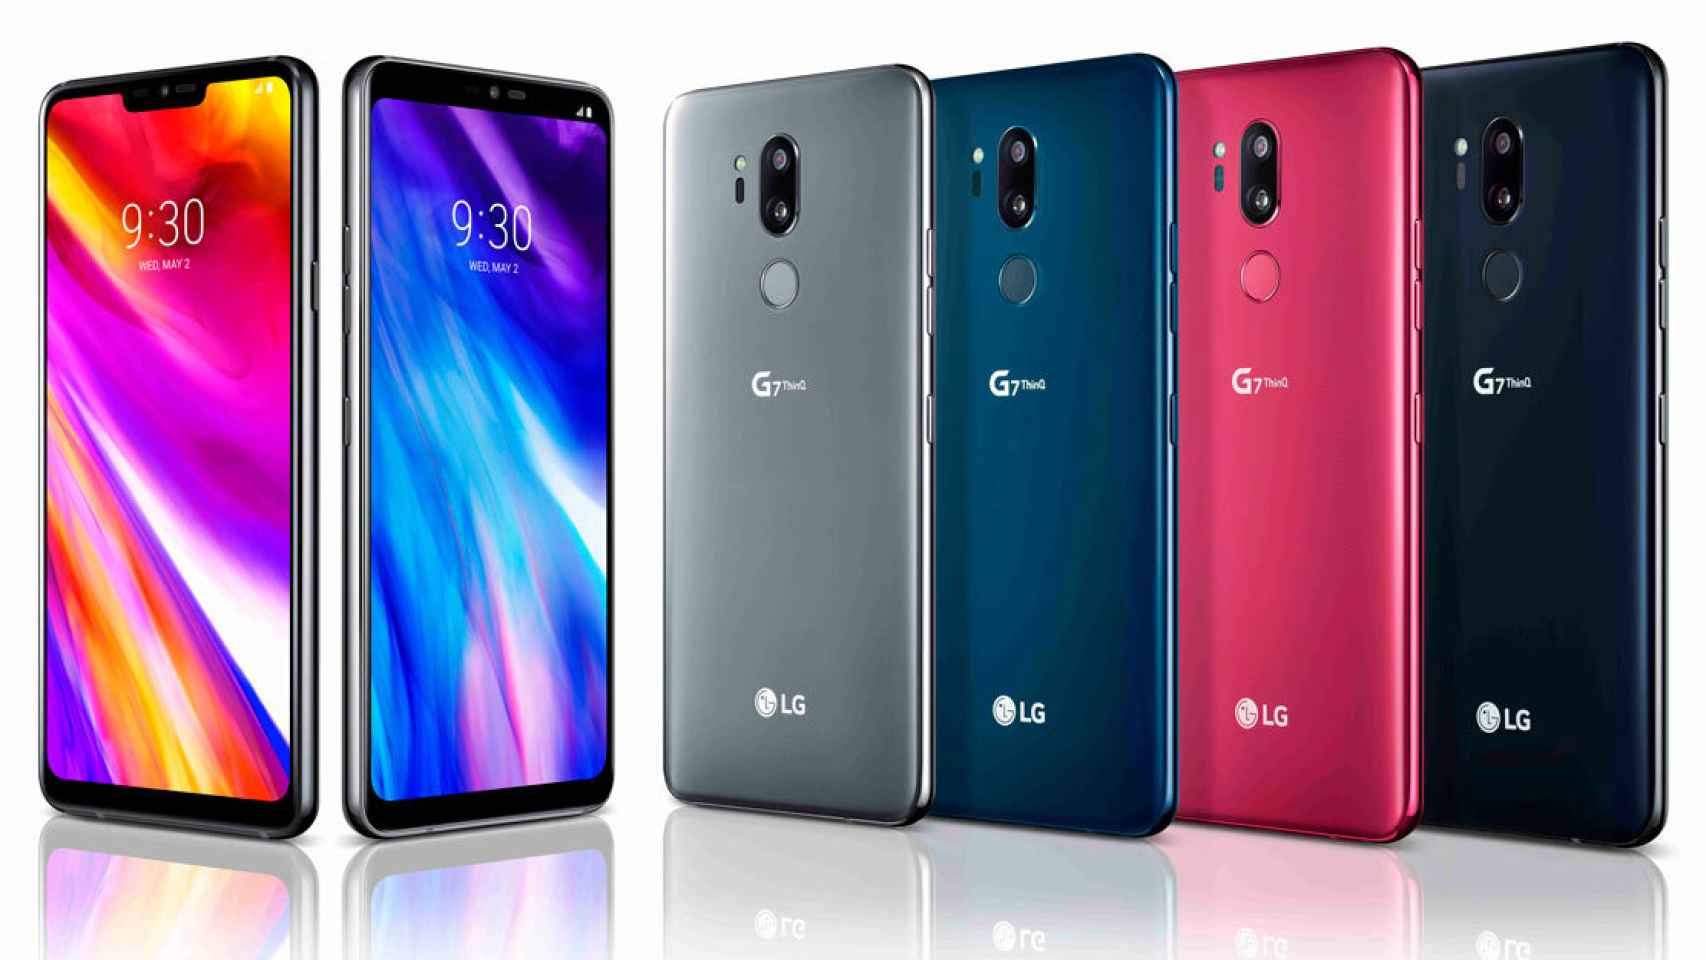 Comparamos al LG G7 ThinQ con sus principales alternativas